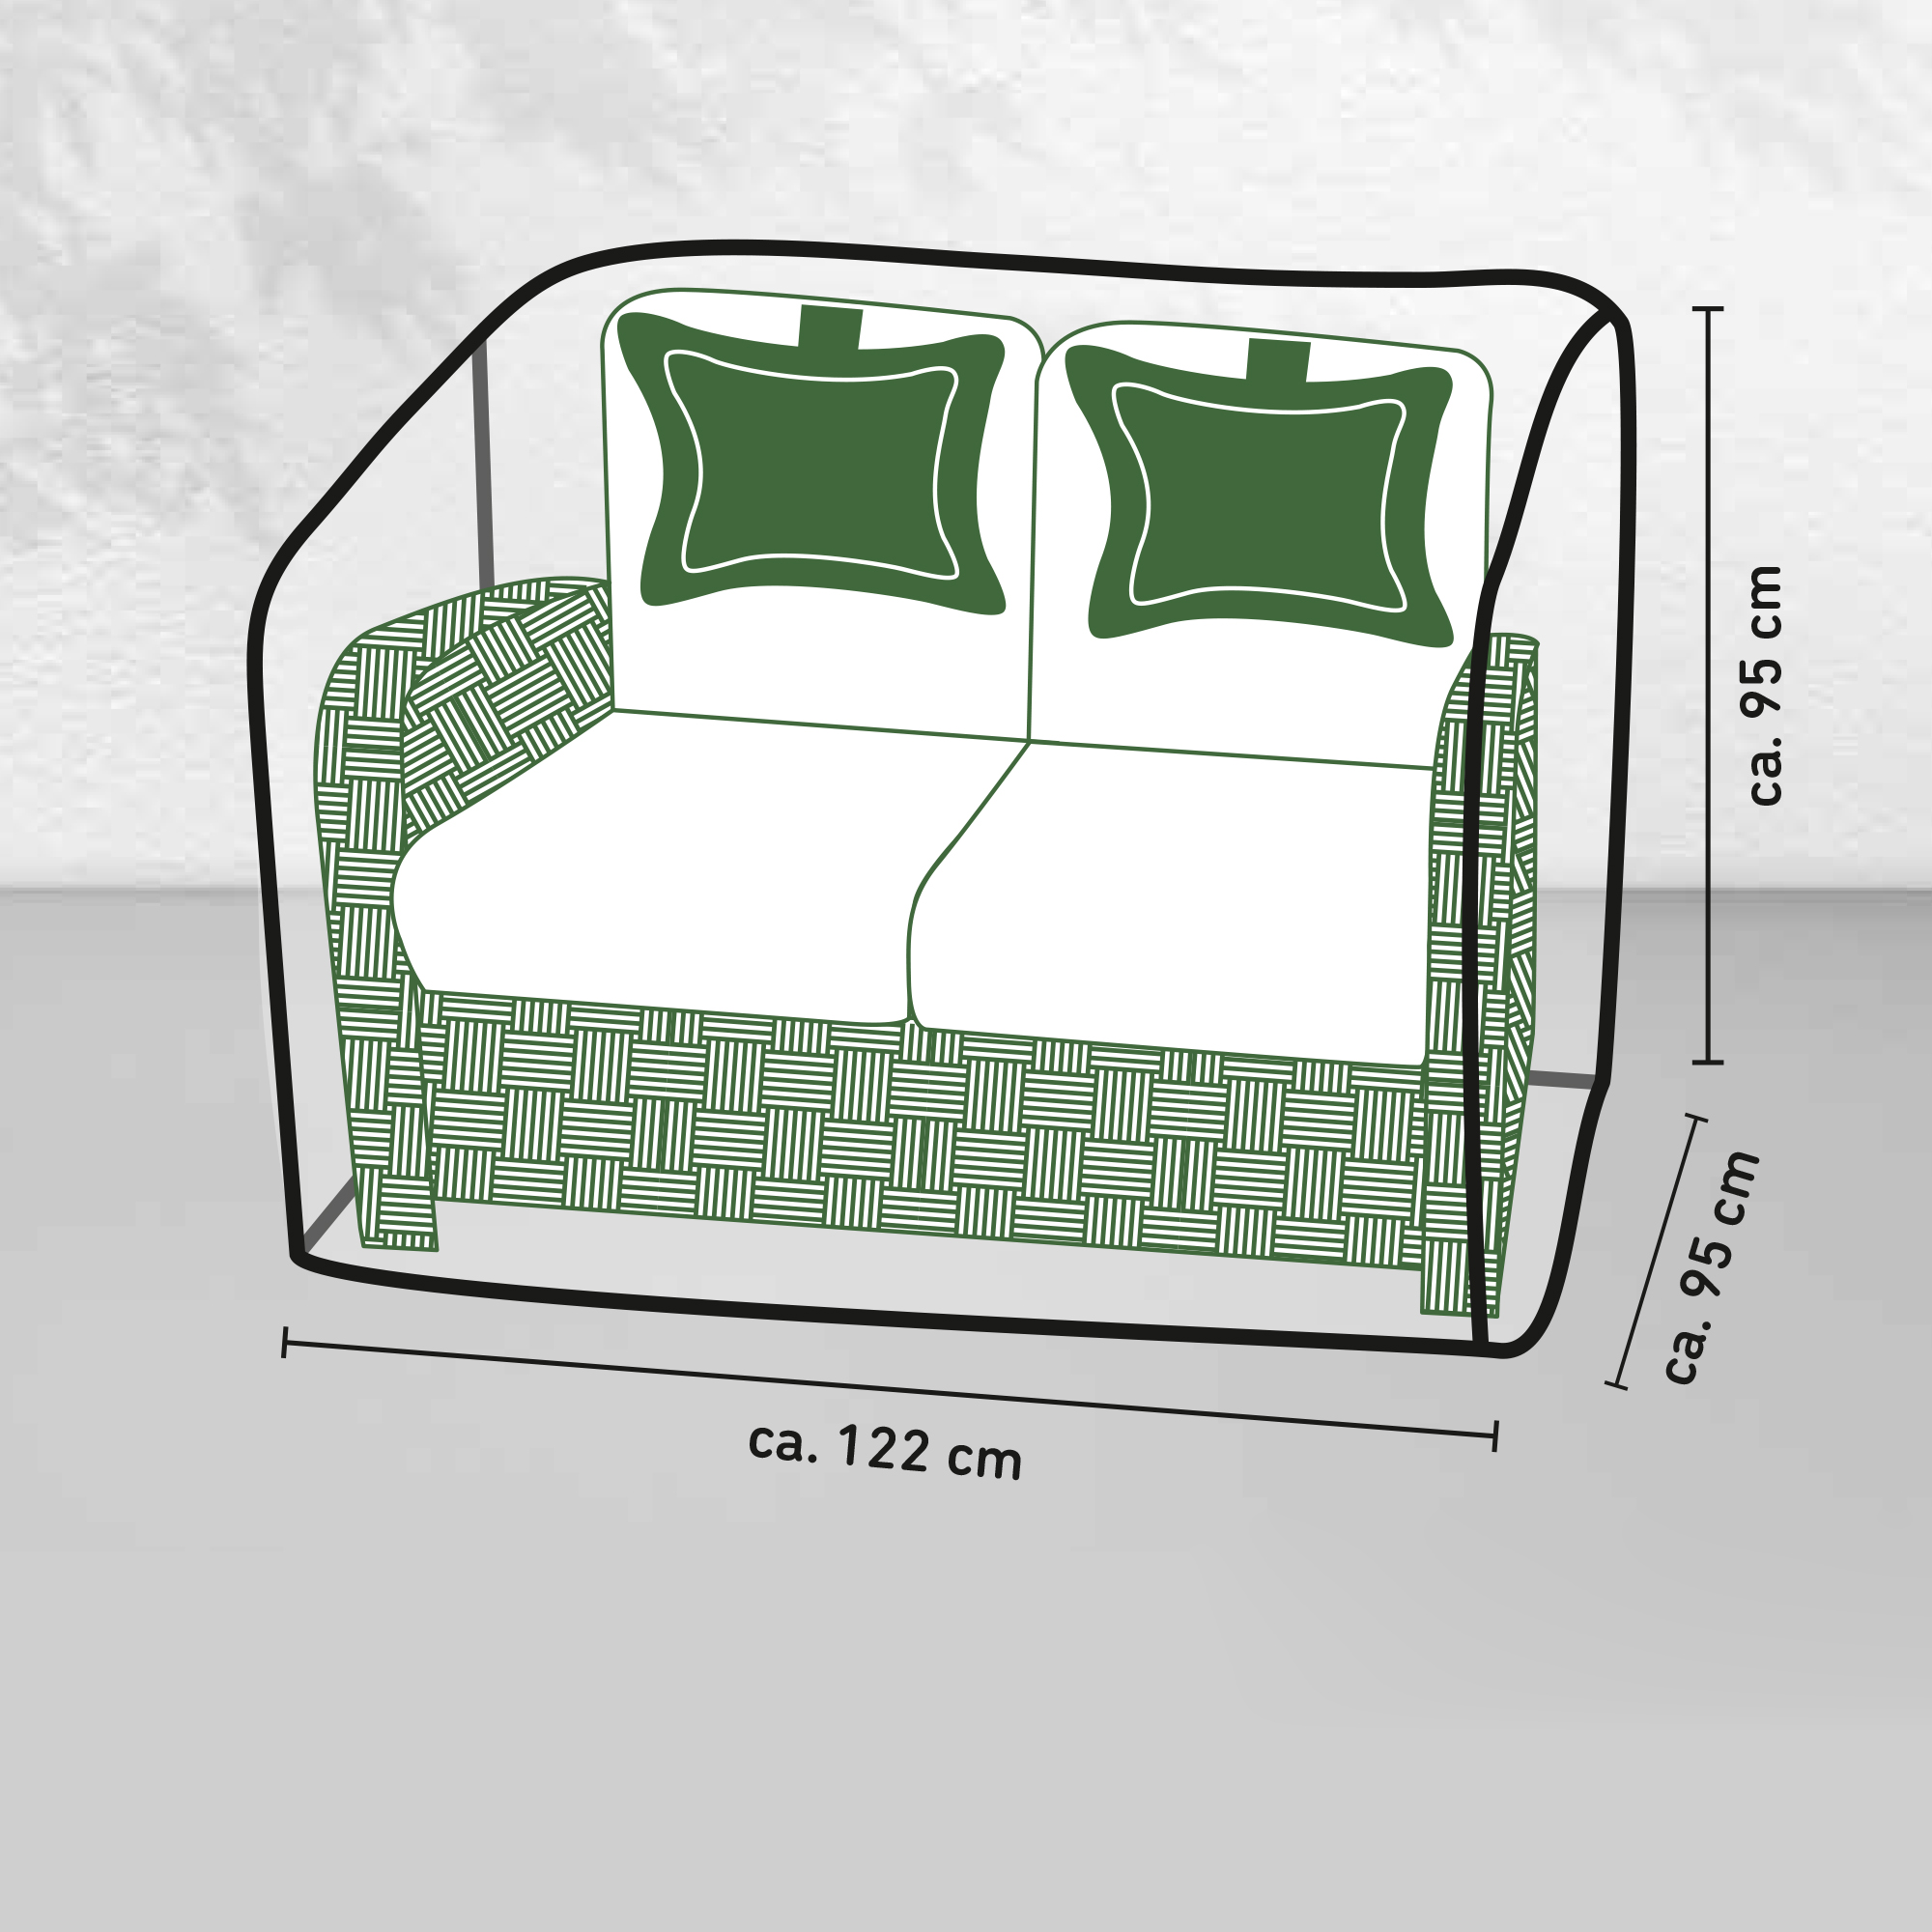 Doppelsitzer-Schutzhülle für Doppelsitzer bis 1,2 m + product picture